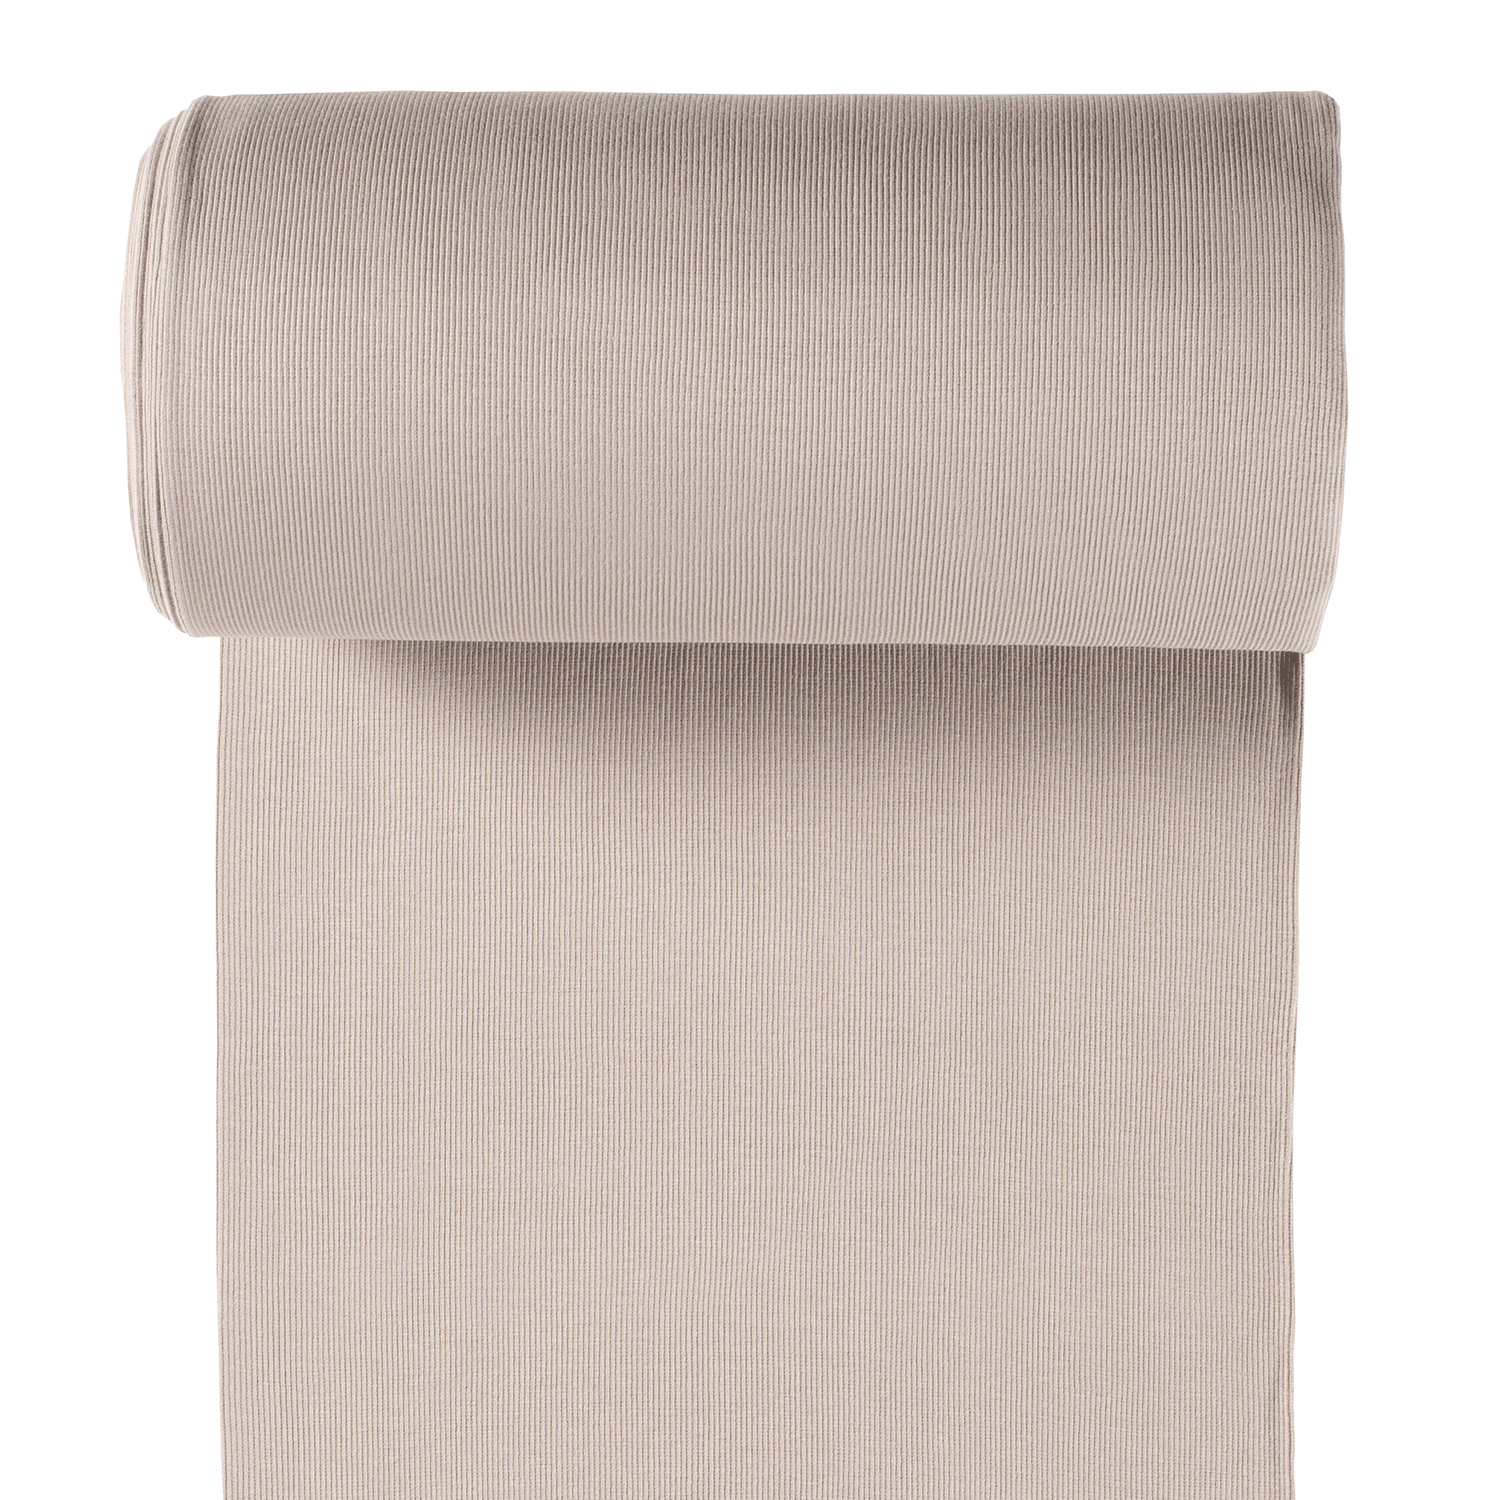 Tubular Ribbing 2x2 - Sand-Rib Knit-Jelly Fabrics